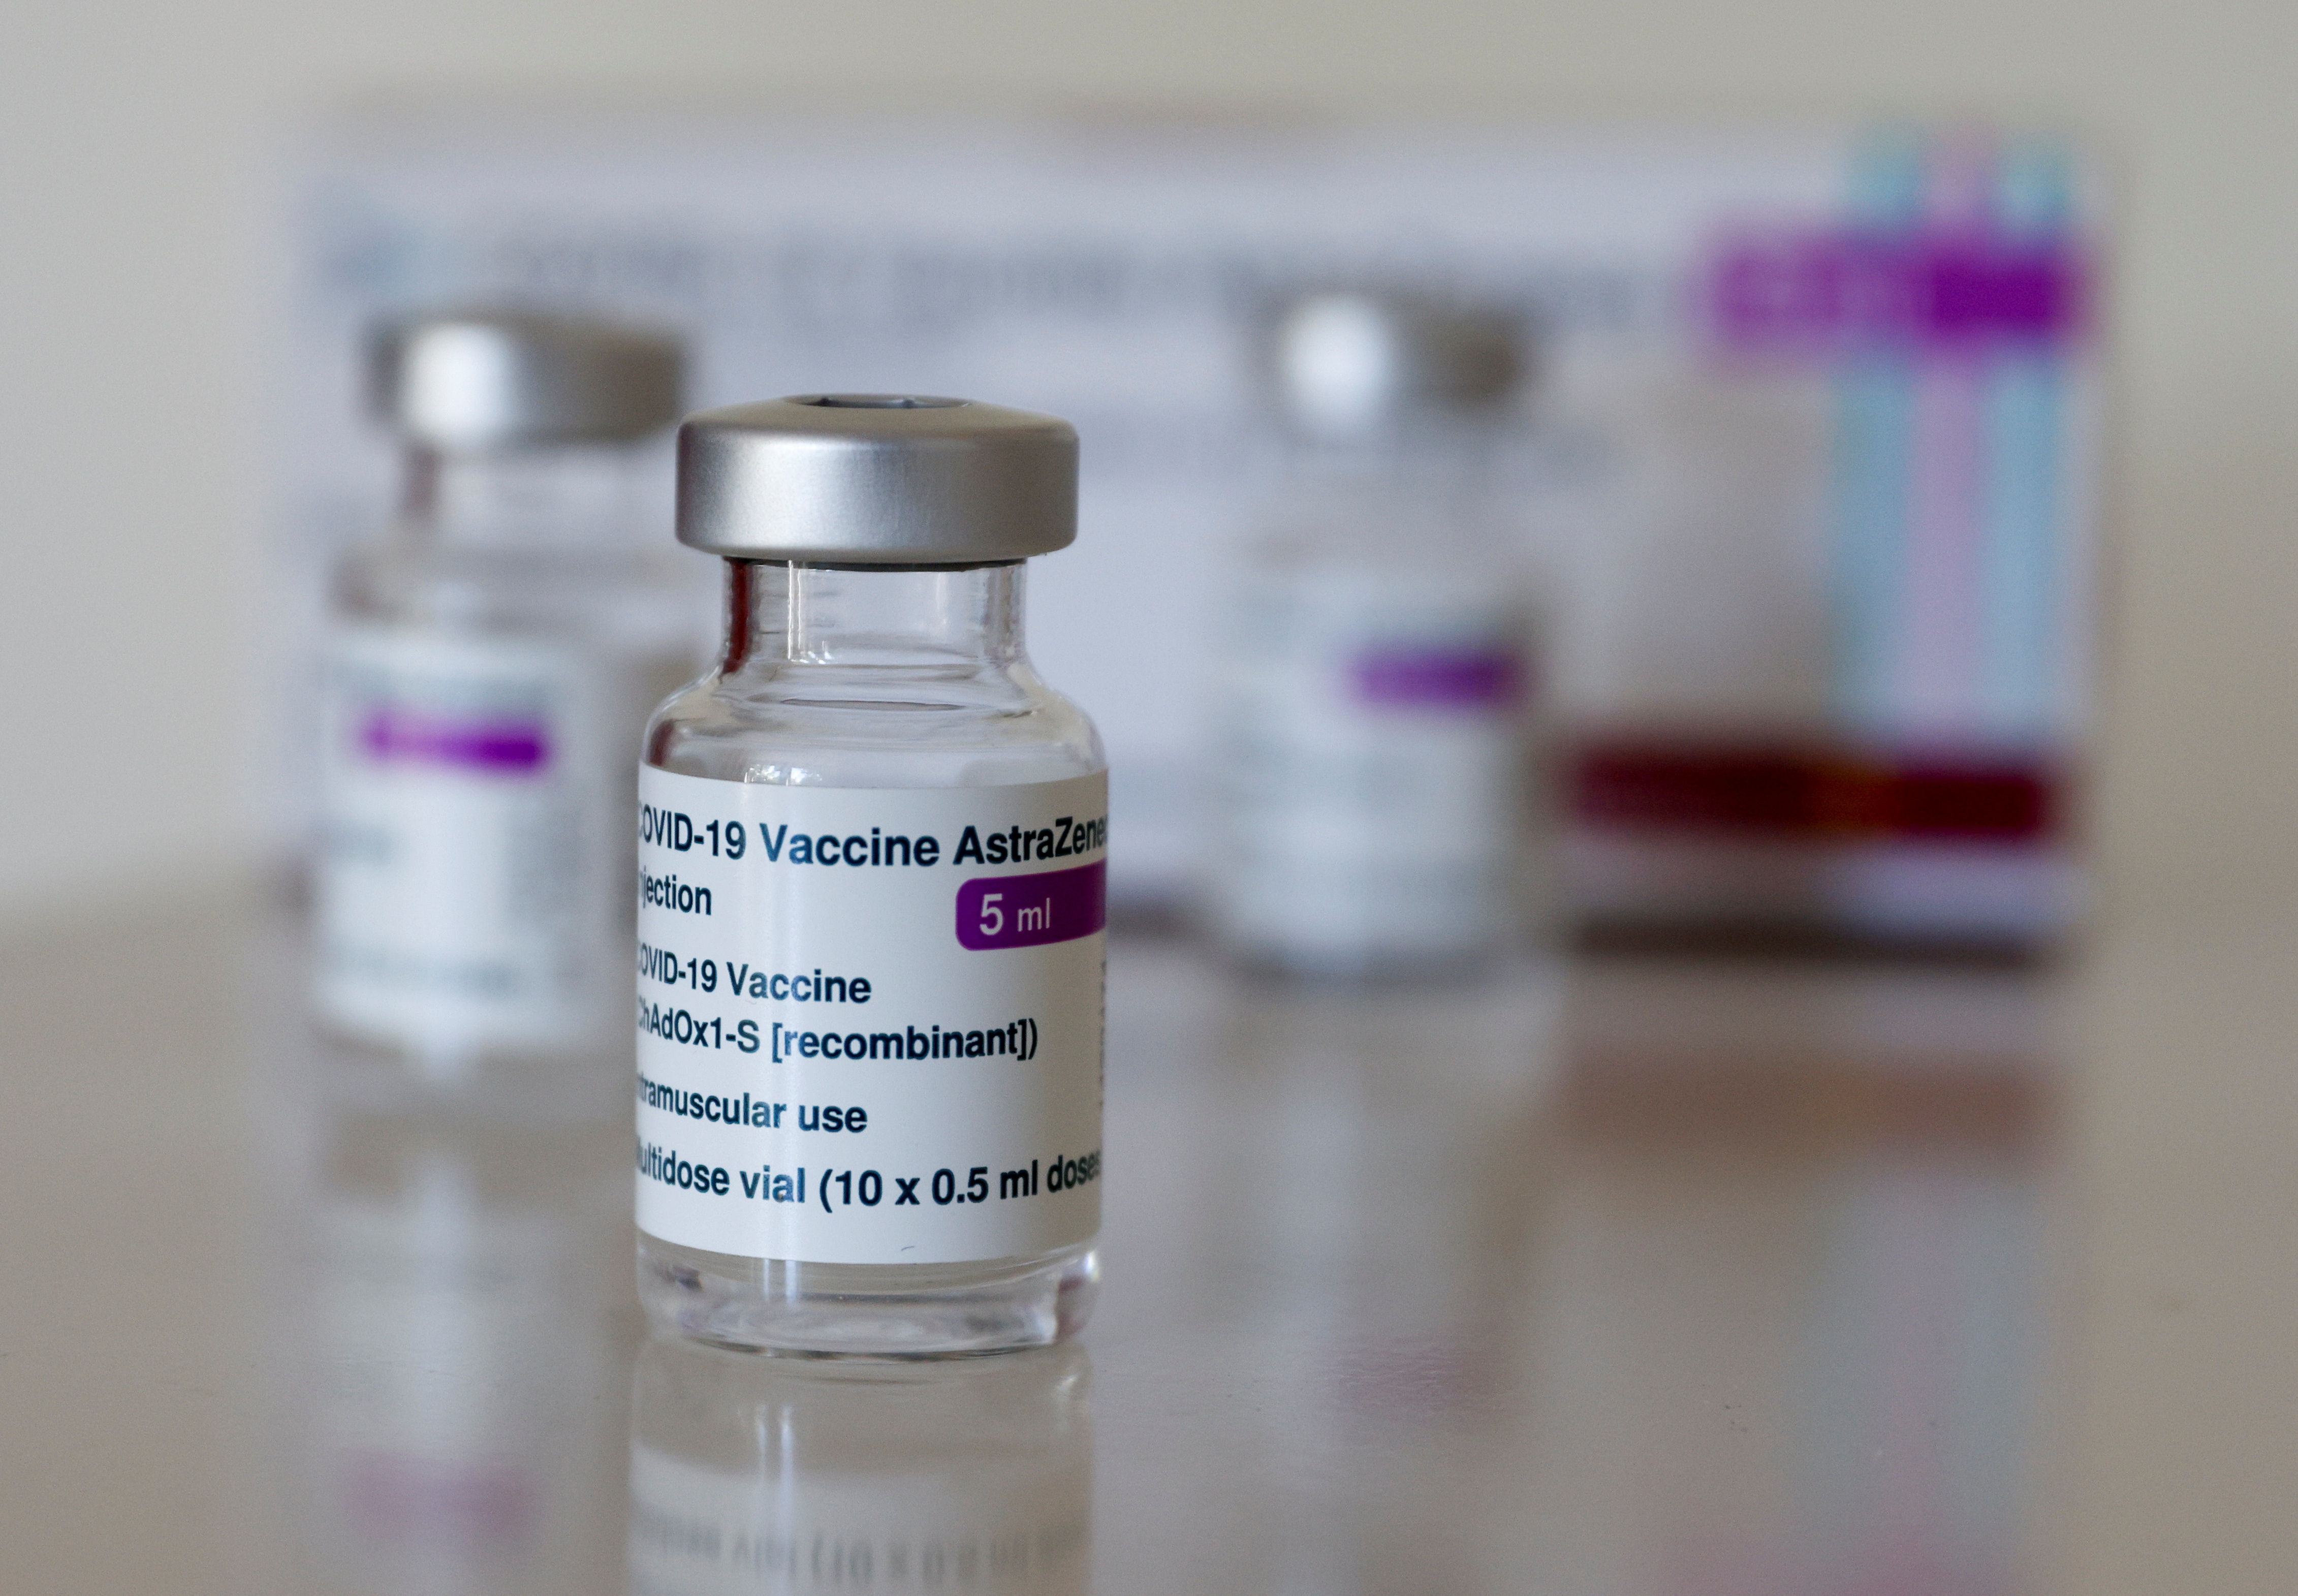 Vials of AstraZeneca's COVID-19 vaccine are seen in Vienna